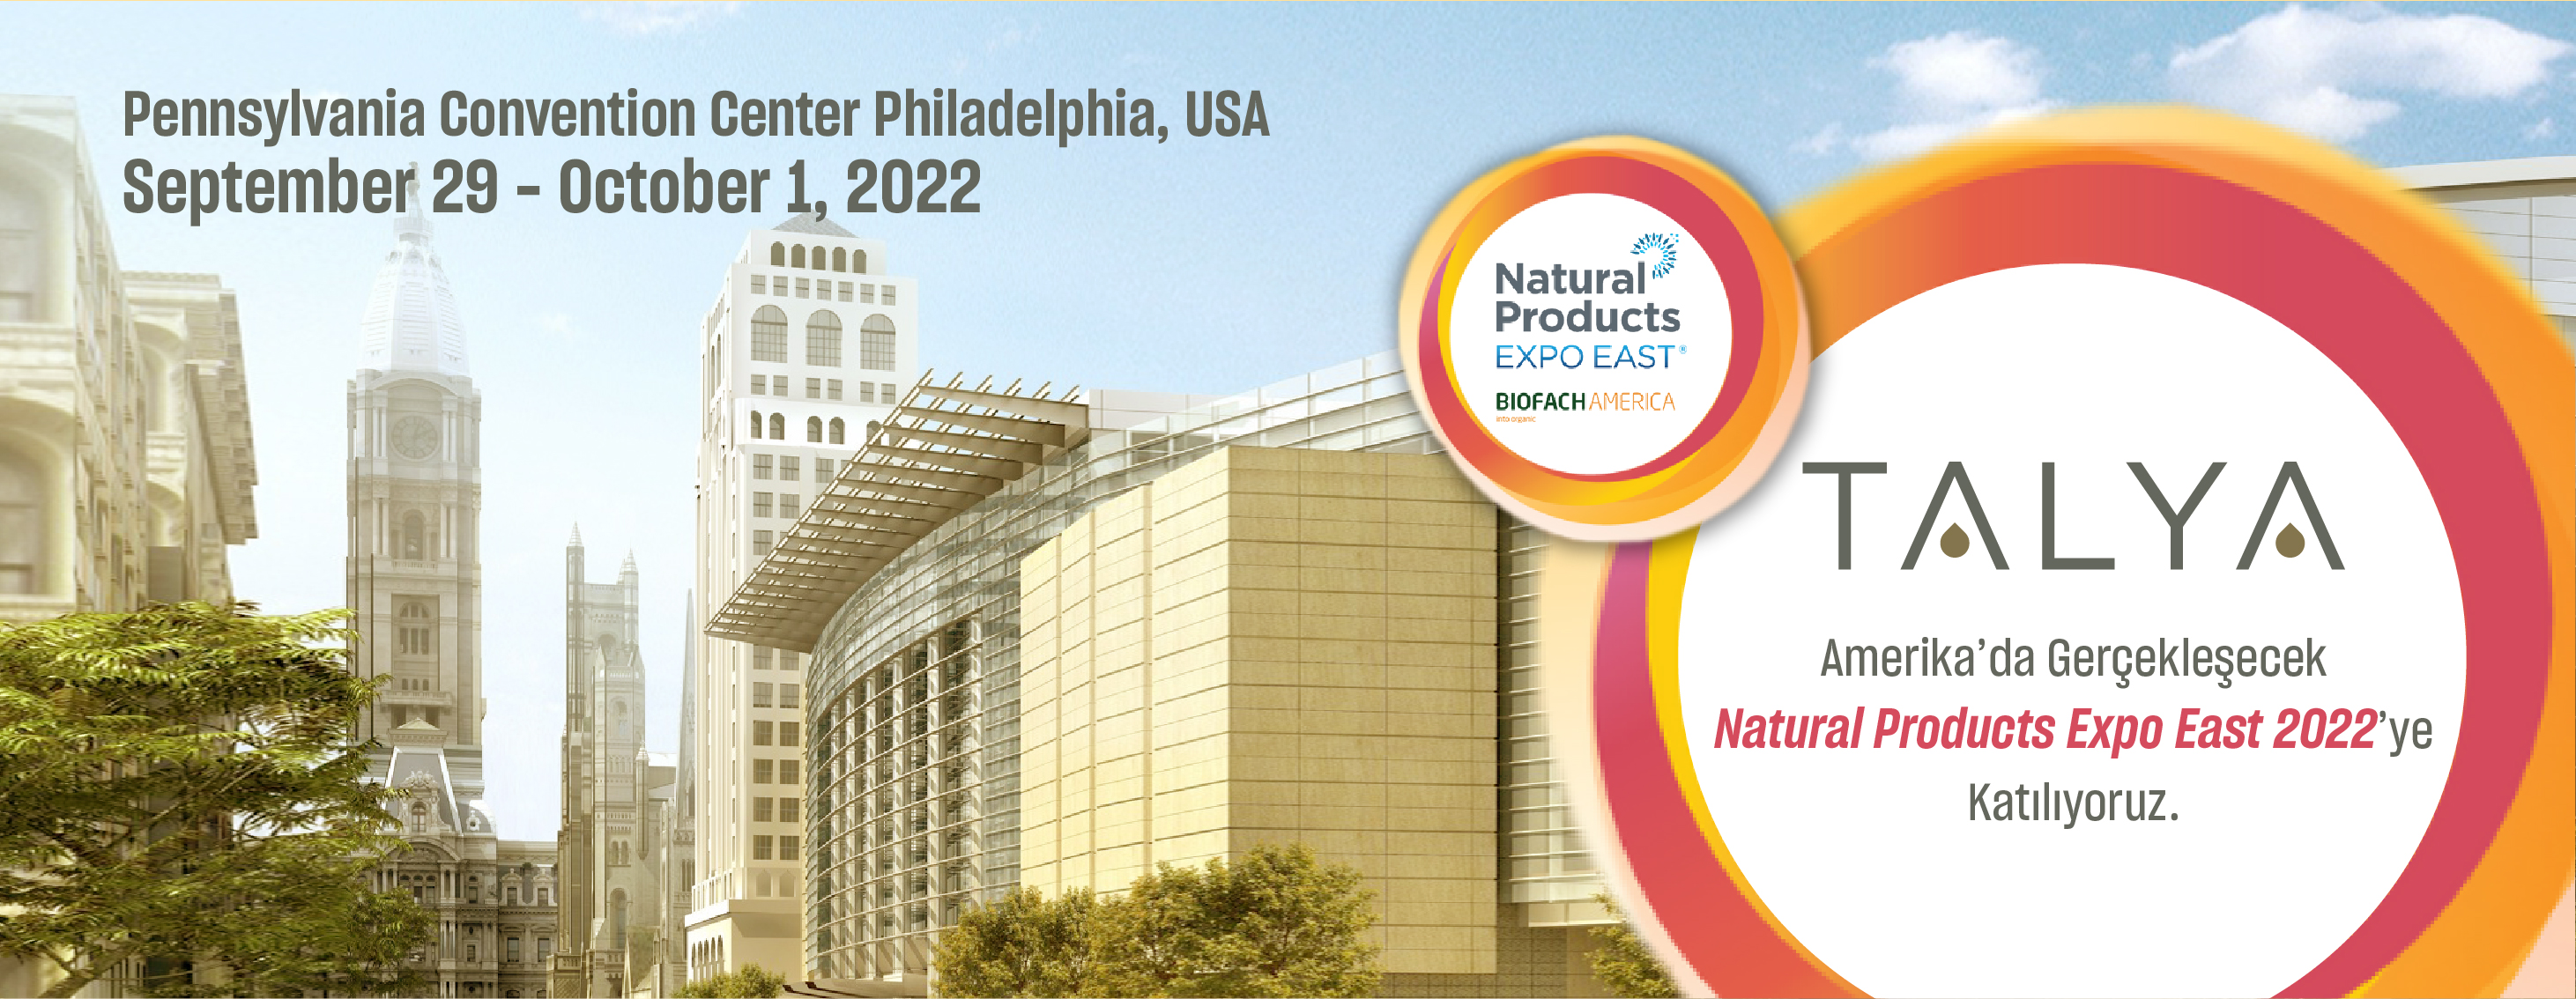 Talya olarak; Natural Products Expo East 2022’ye Katılıyoruz